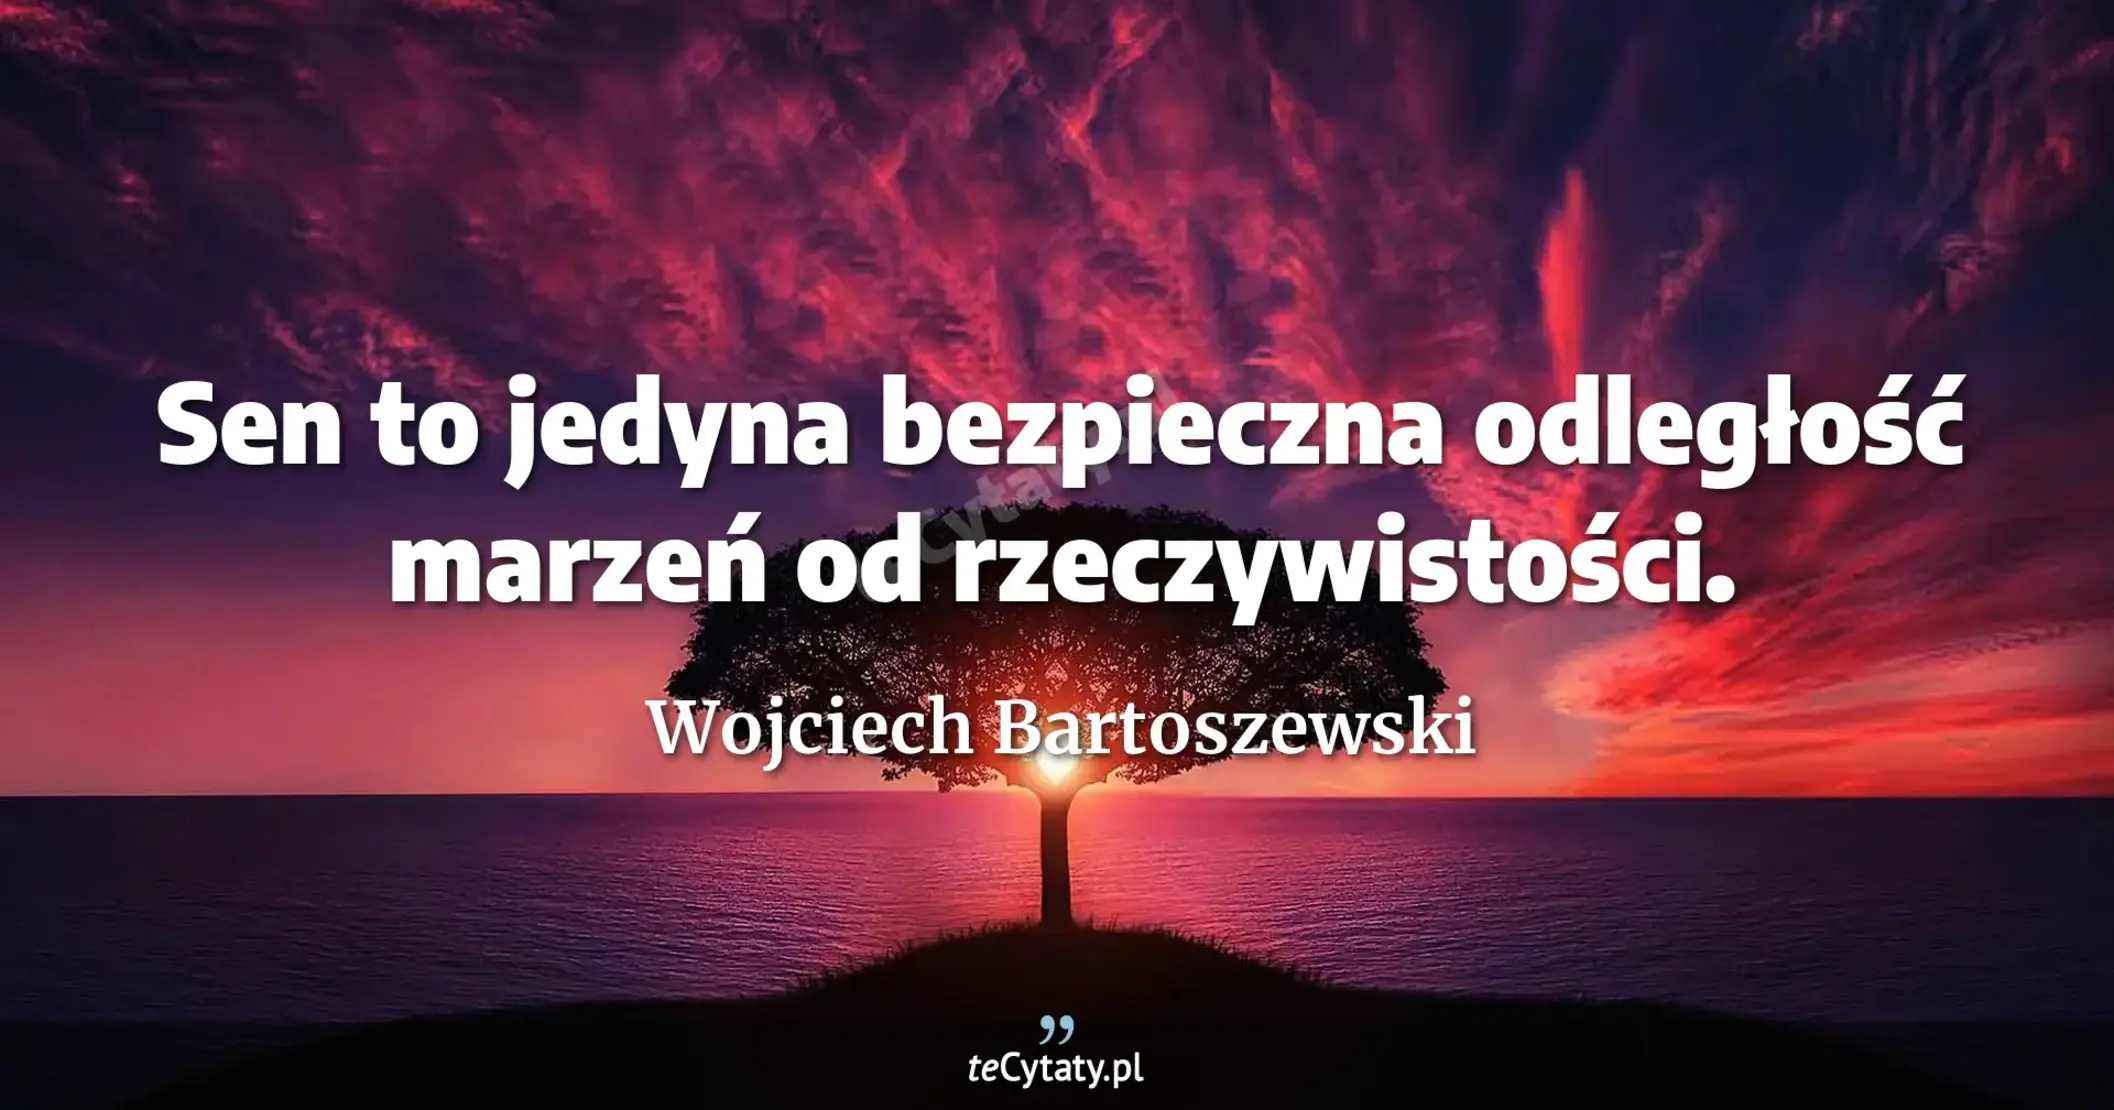 Sen to jedyna bezpieczna odległość marzeń od rzeczywistości. - Wojciech Bartoszewski